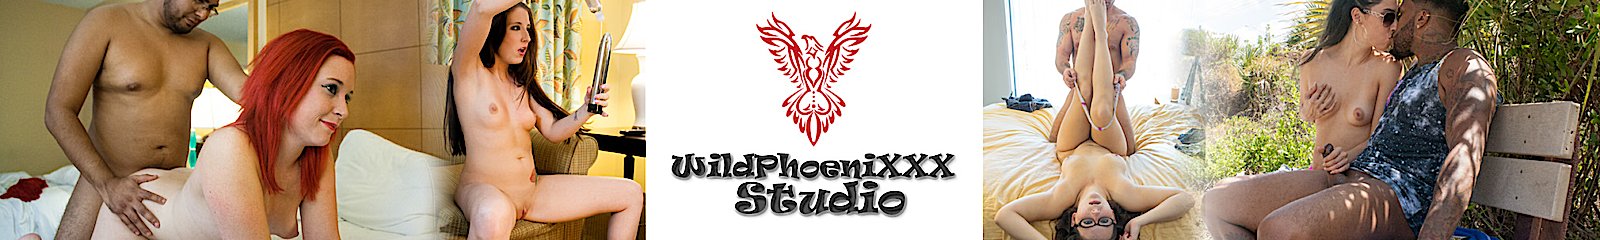 Wild Phoenixxx Studios